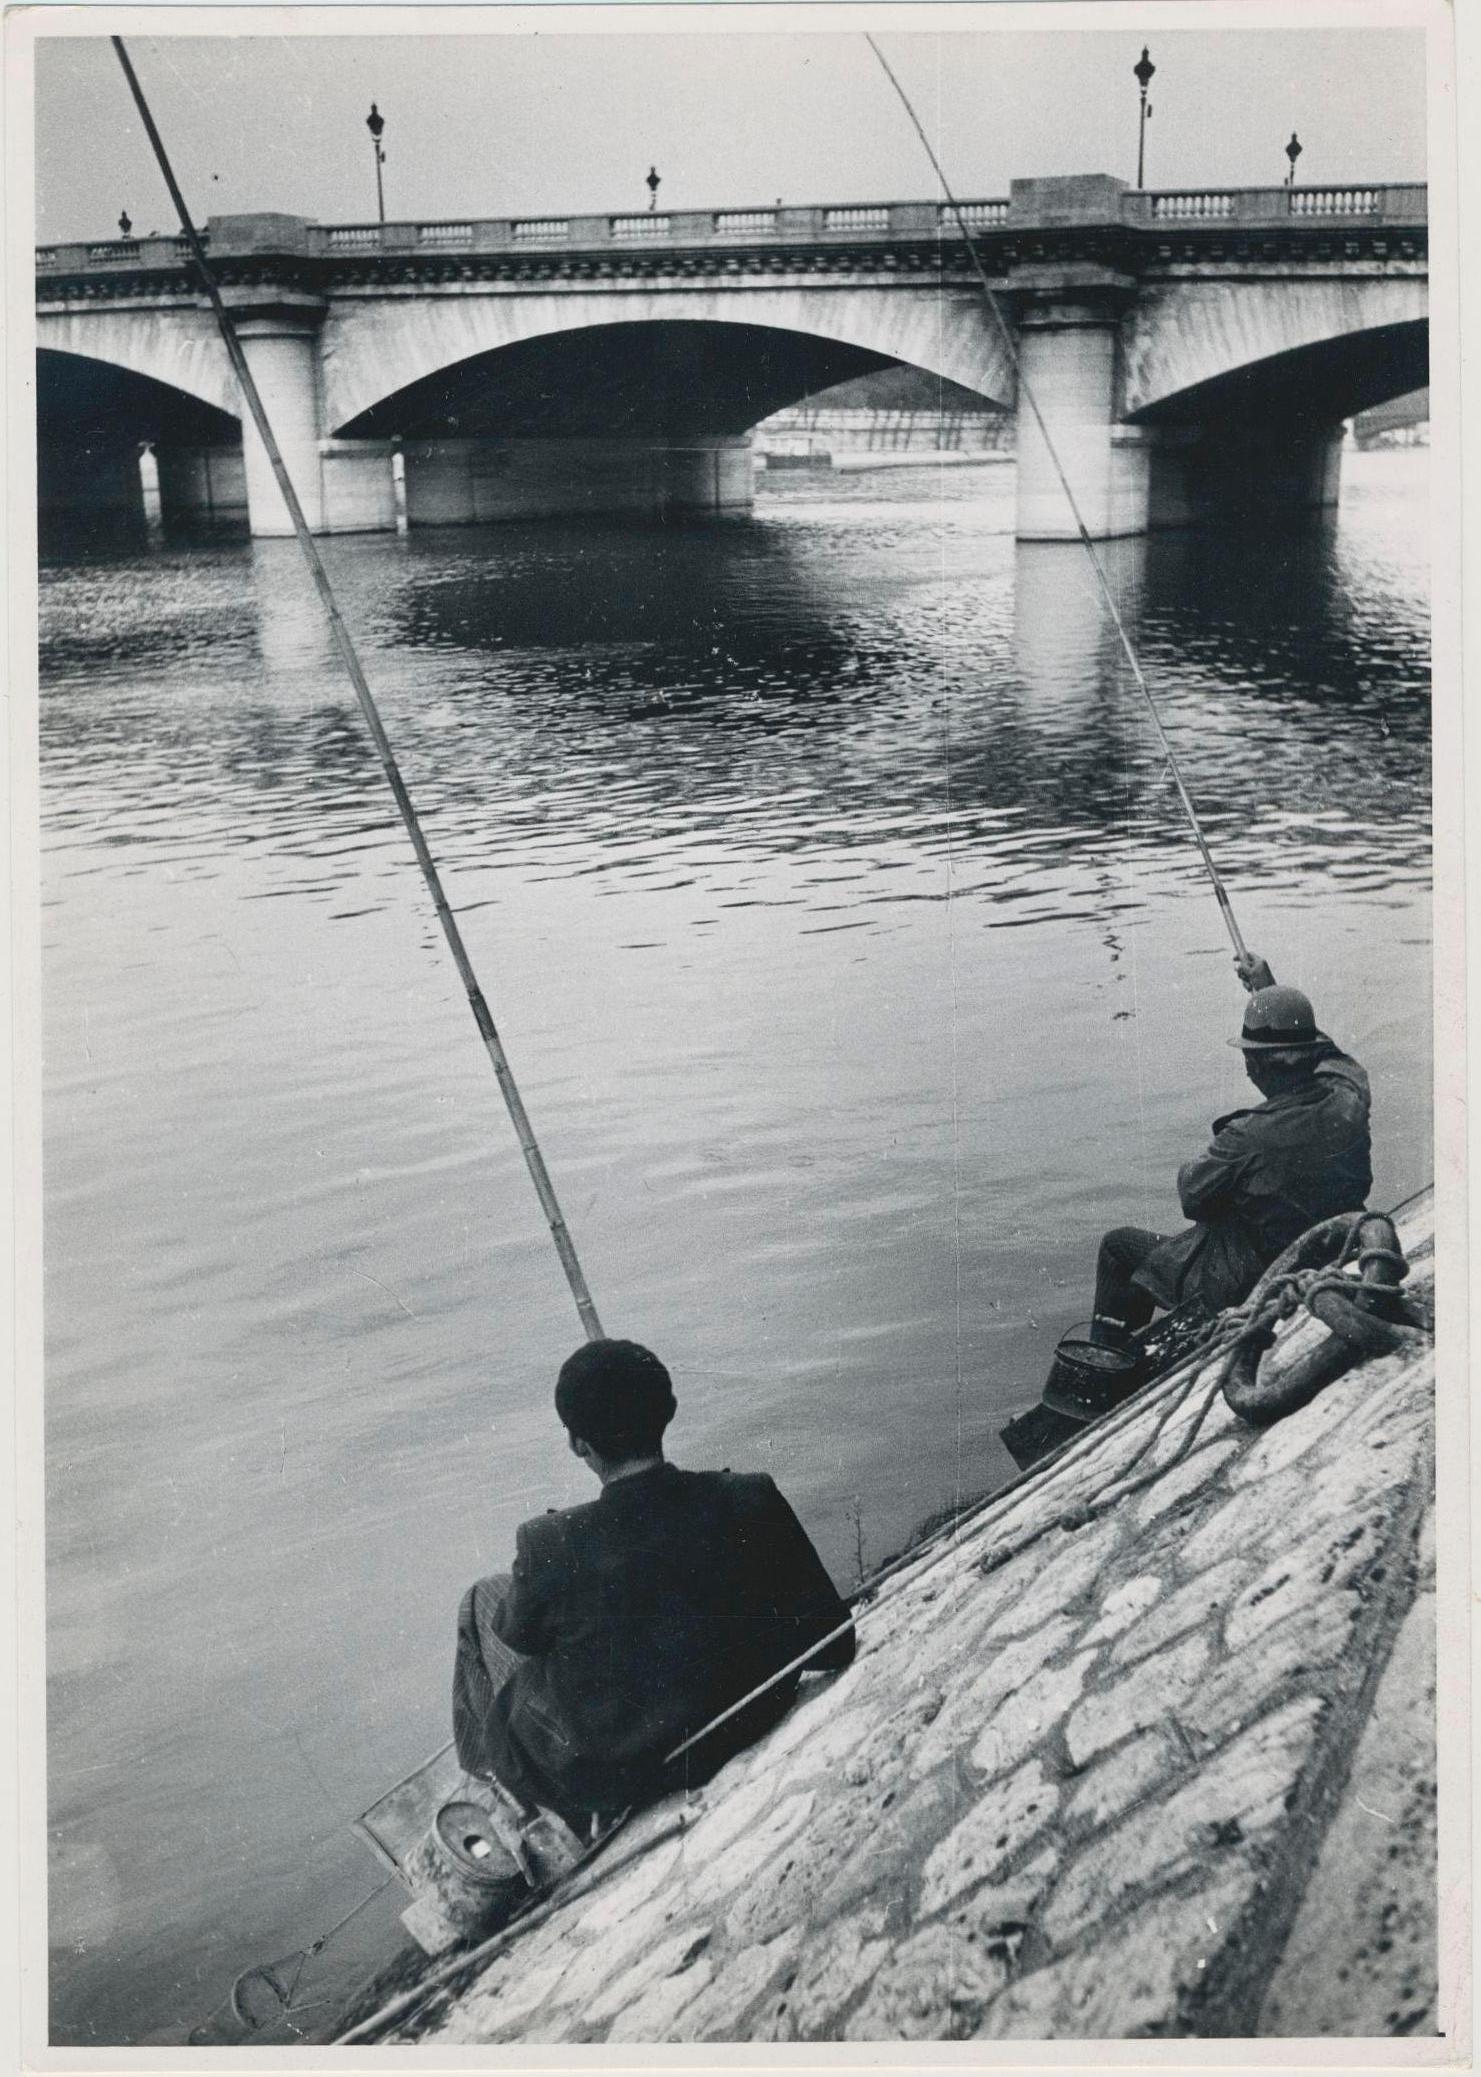 Erich Andres Landscape Photograph - Fishermen; Street Photography; Black and White; Paris, 1950s, 17, 5 x 12, 4 cm